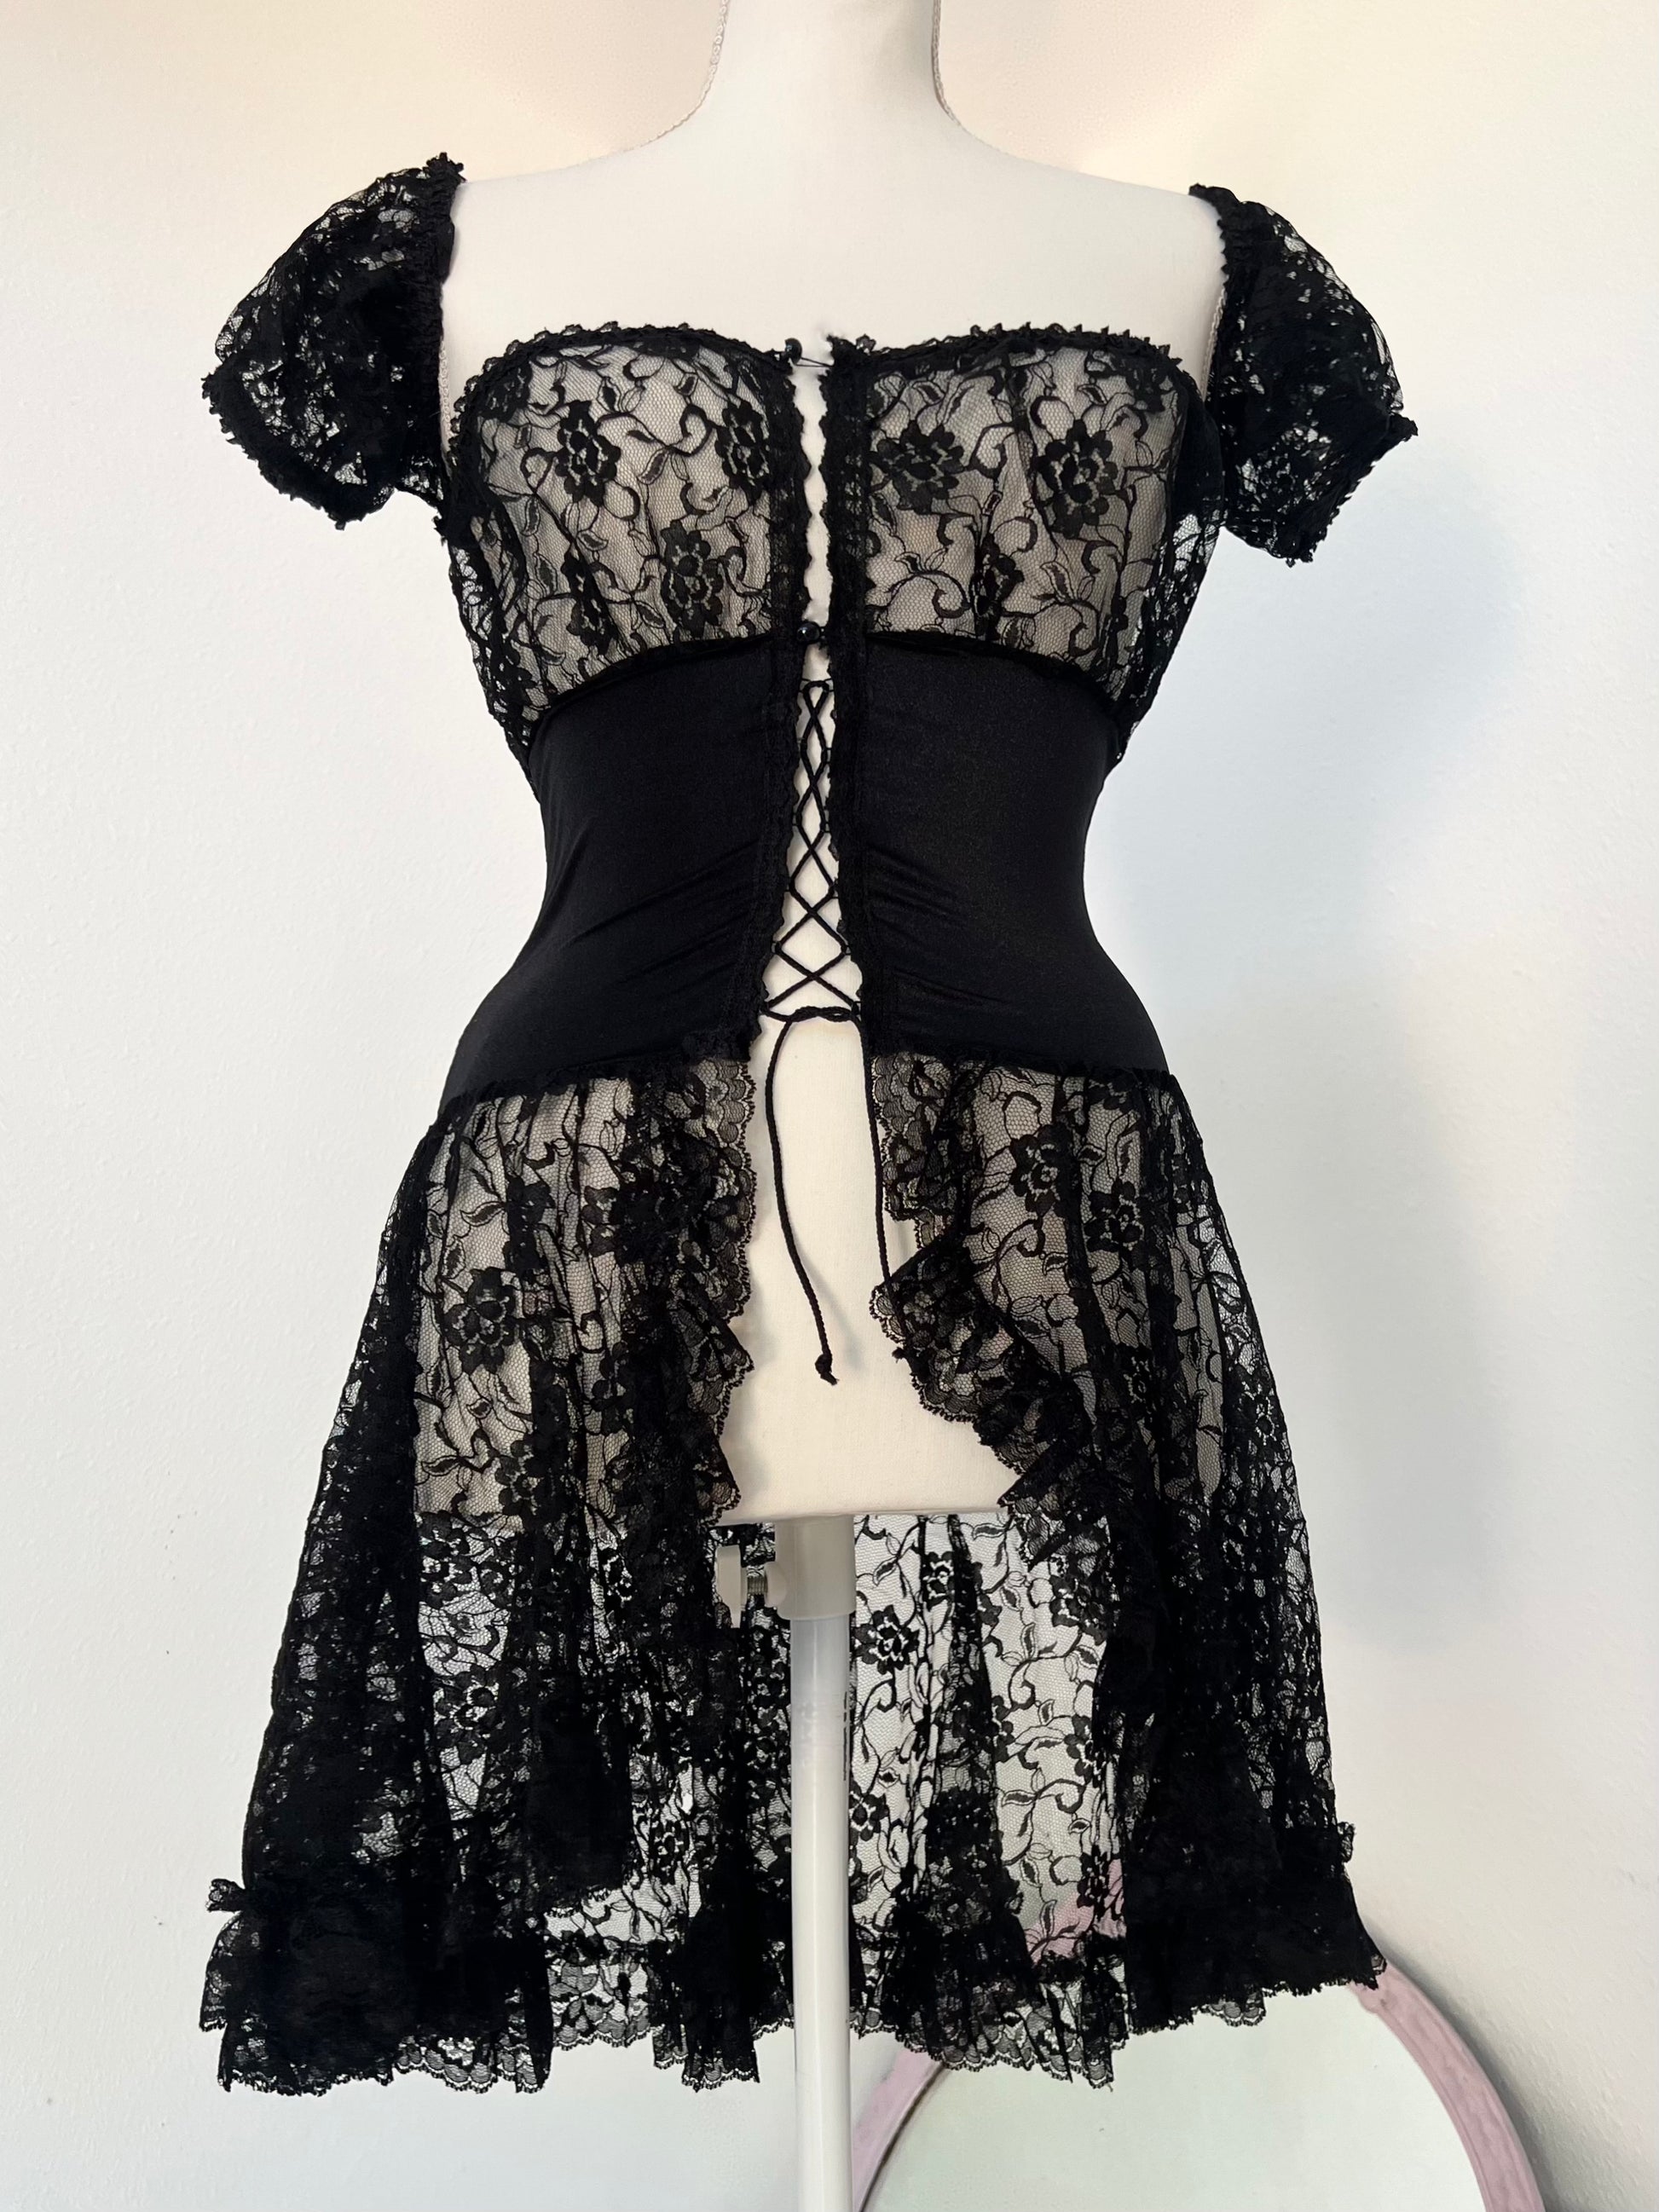 Coquette” Brand Black Overlay Lace Midi Dress (XS-S) – Chloé